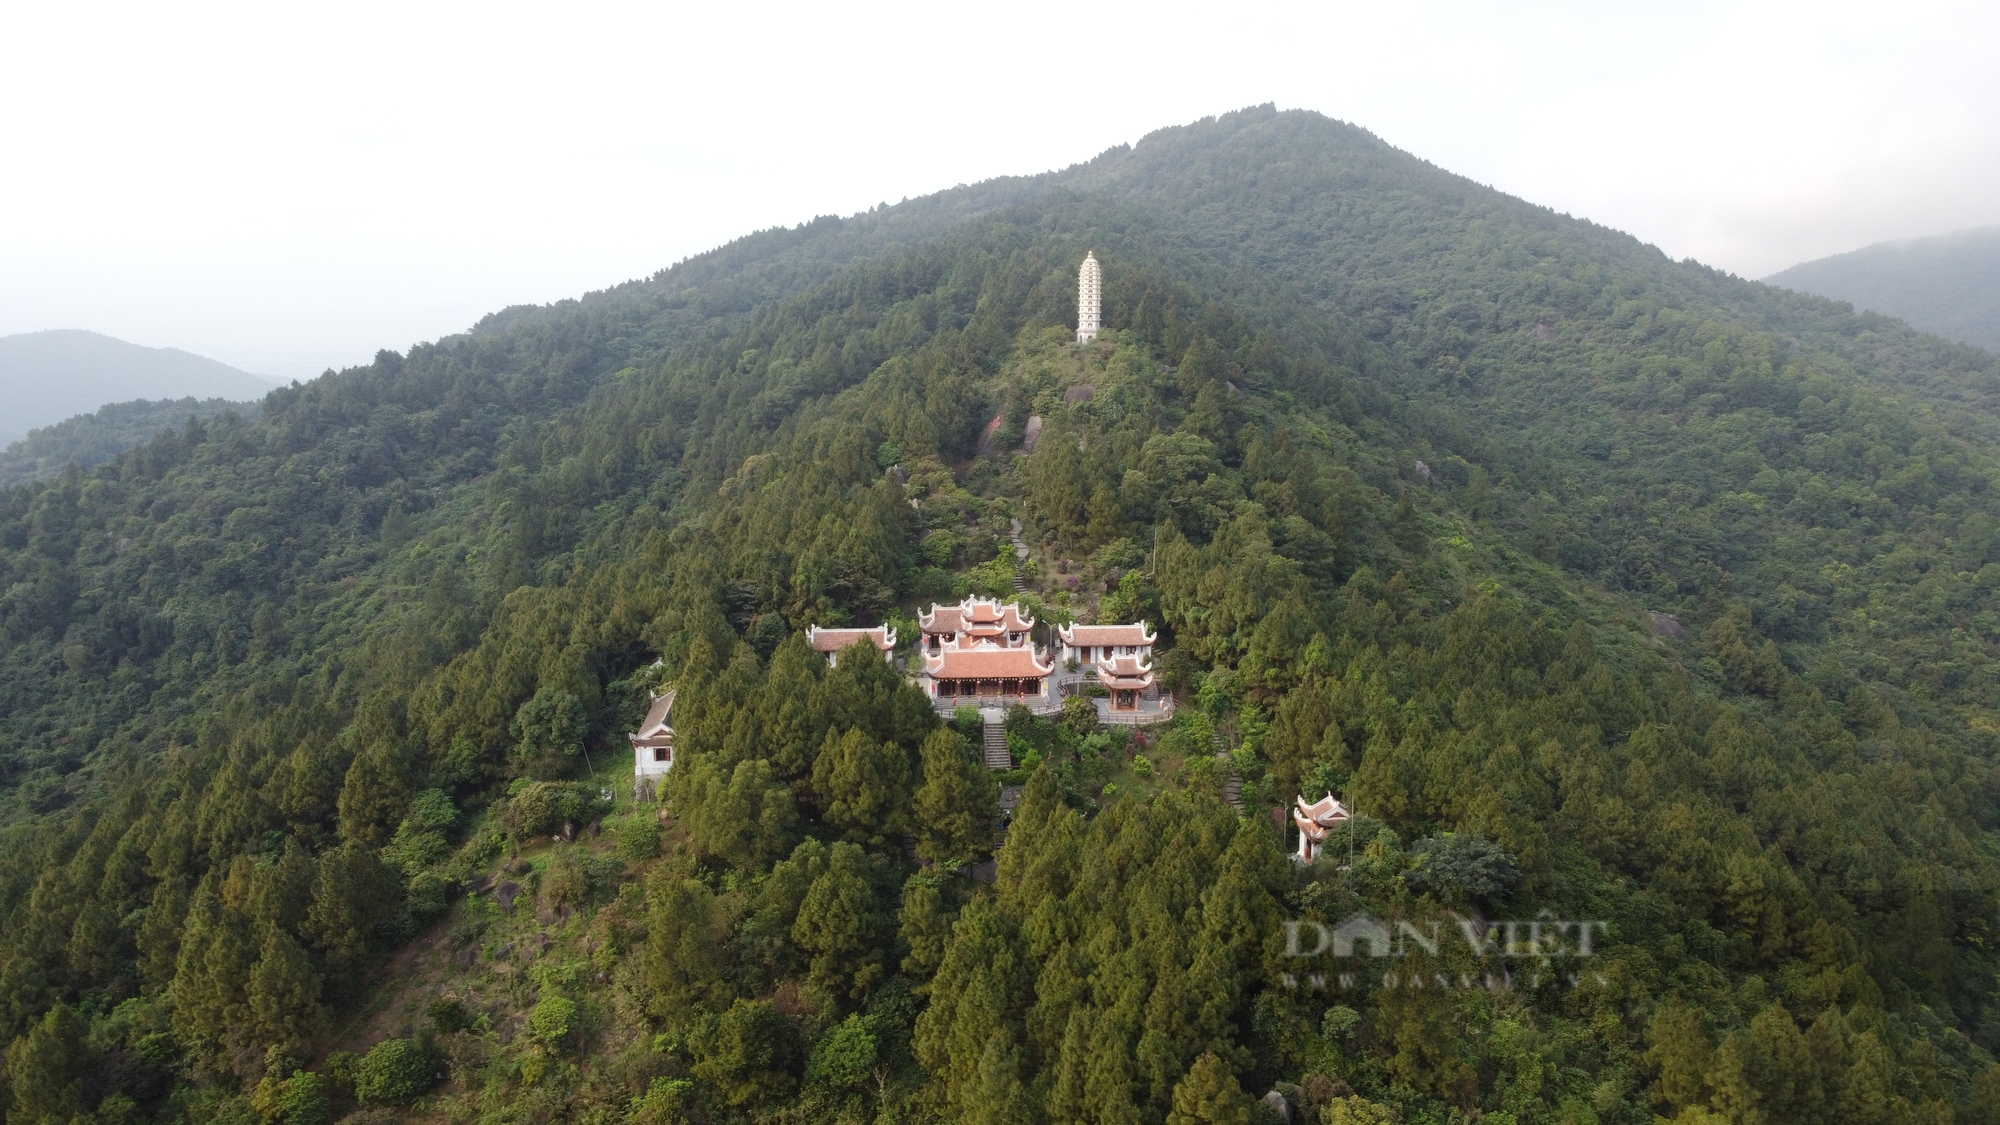 Khám phá ngôi chùa được mệnh danh “Hoan Châu đệ nhất danh lam” trên núi Hồng Lĩnh - Ảnh 7.